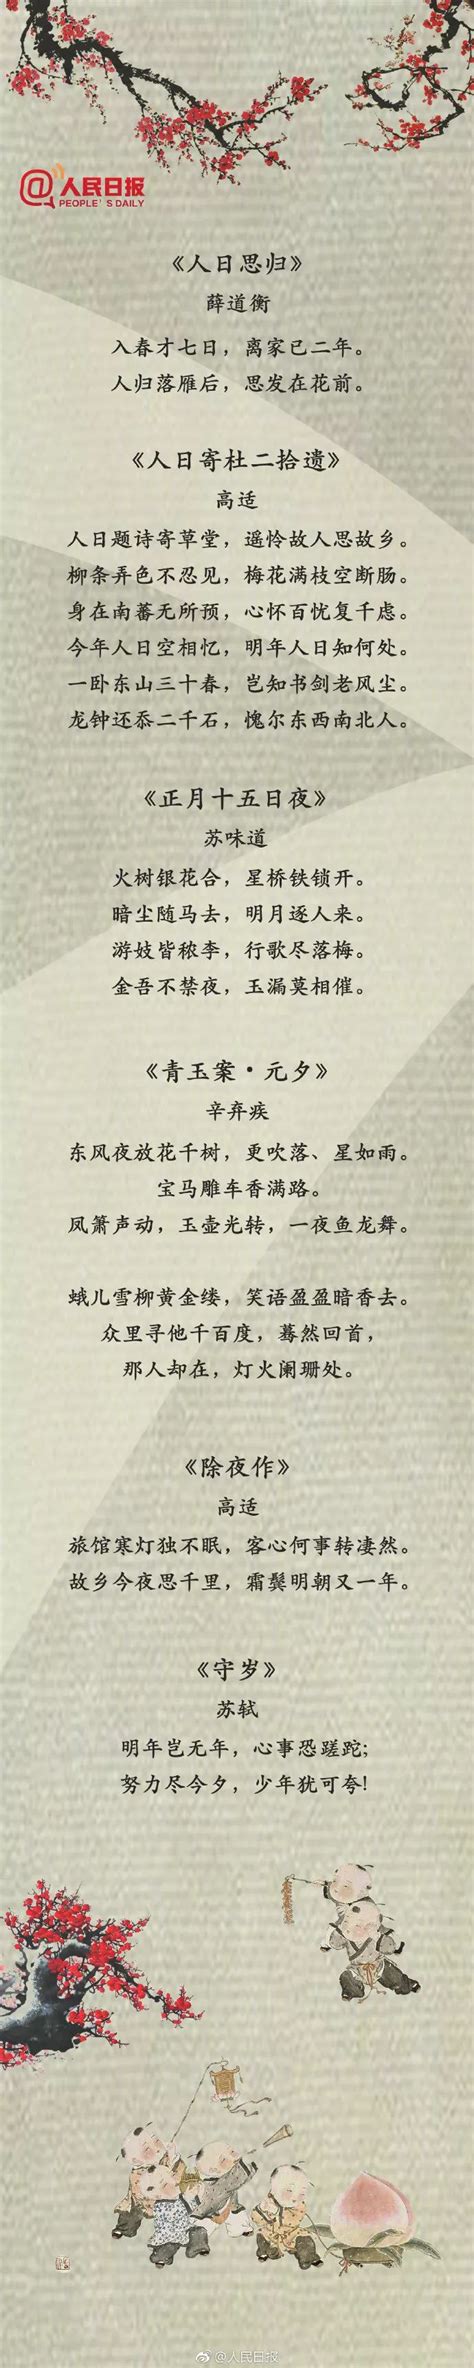 新年祝福诗词古诗词(精选54句)-互汇语录网